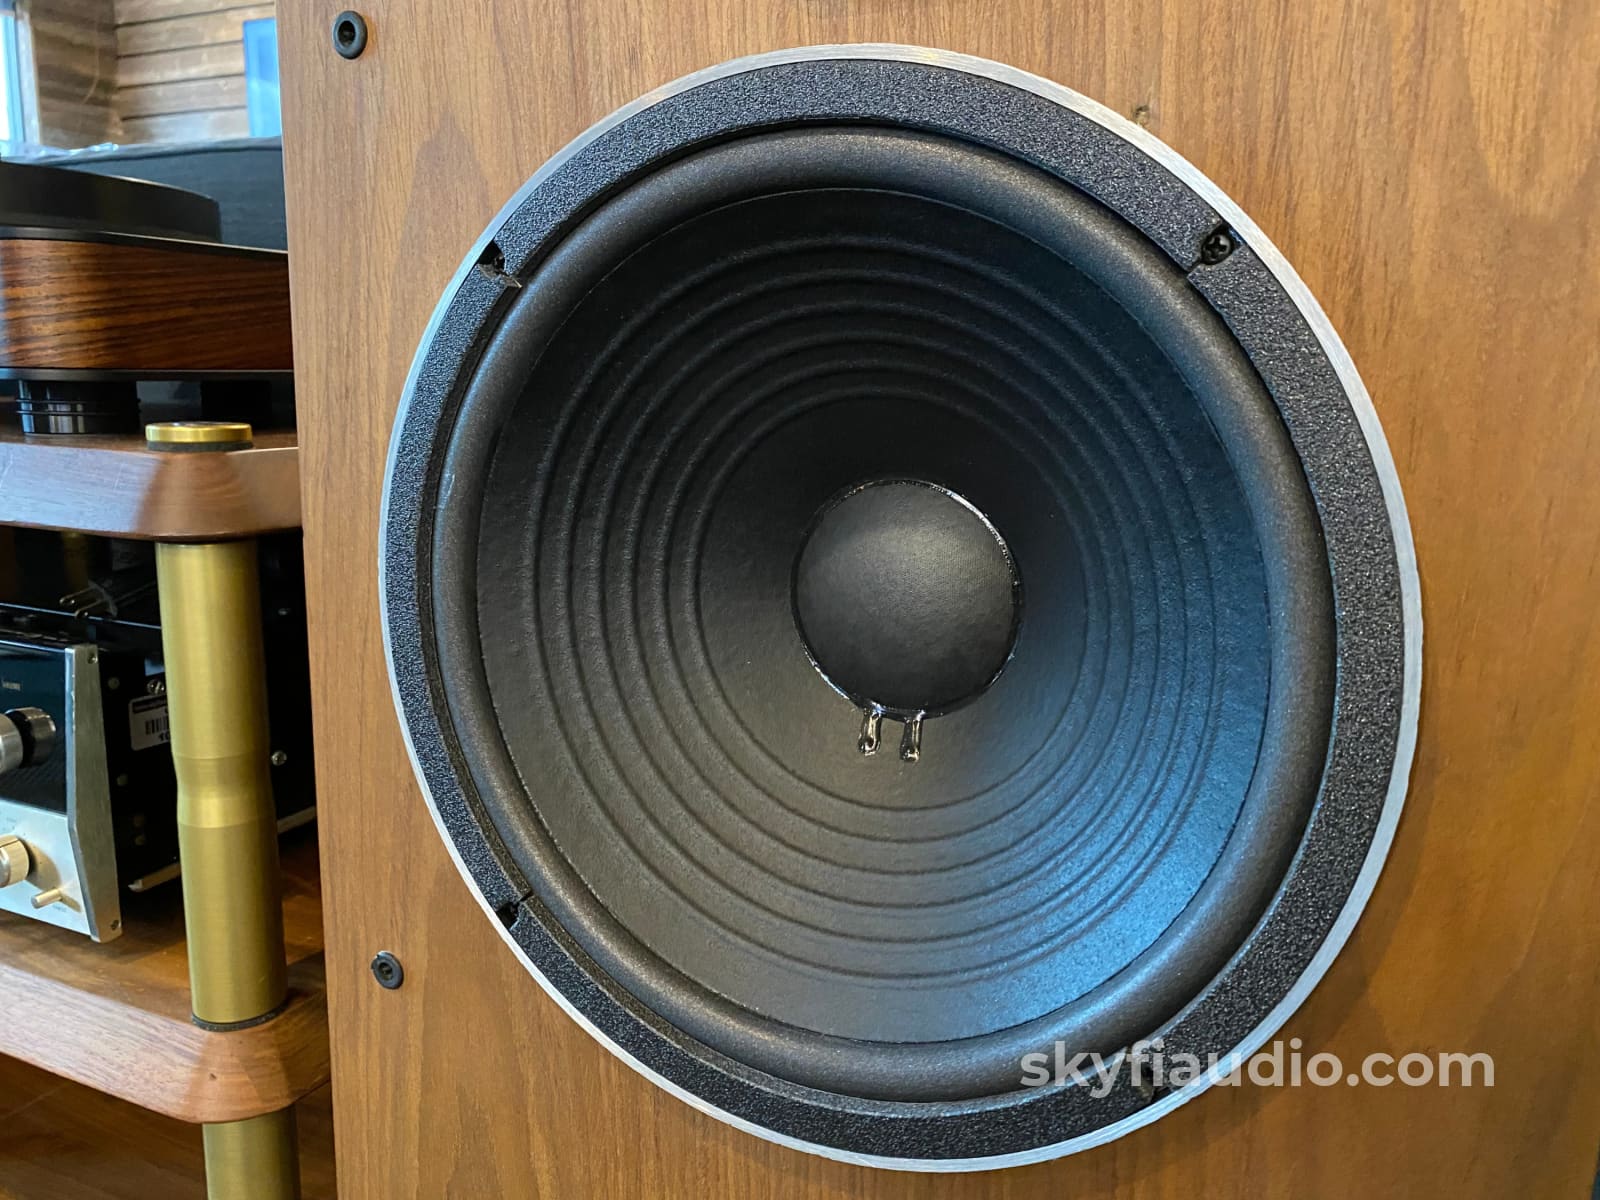 Jbl L100T Vintage Floor Standing Speakers - Super Clean And Restored